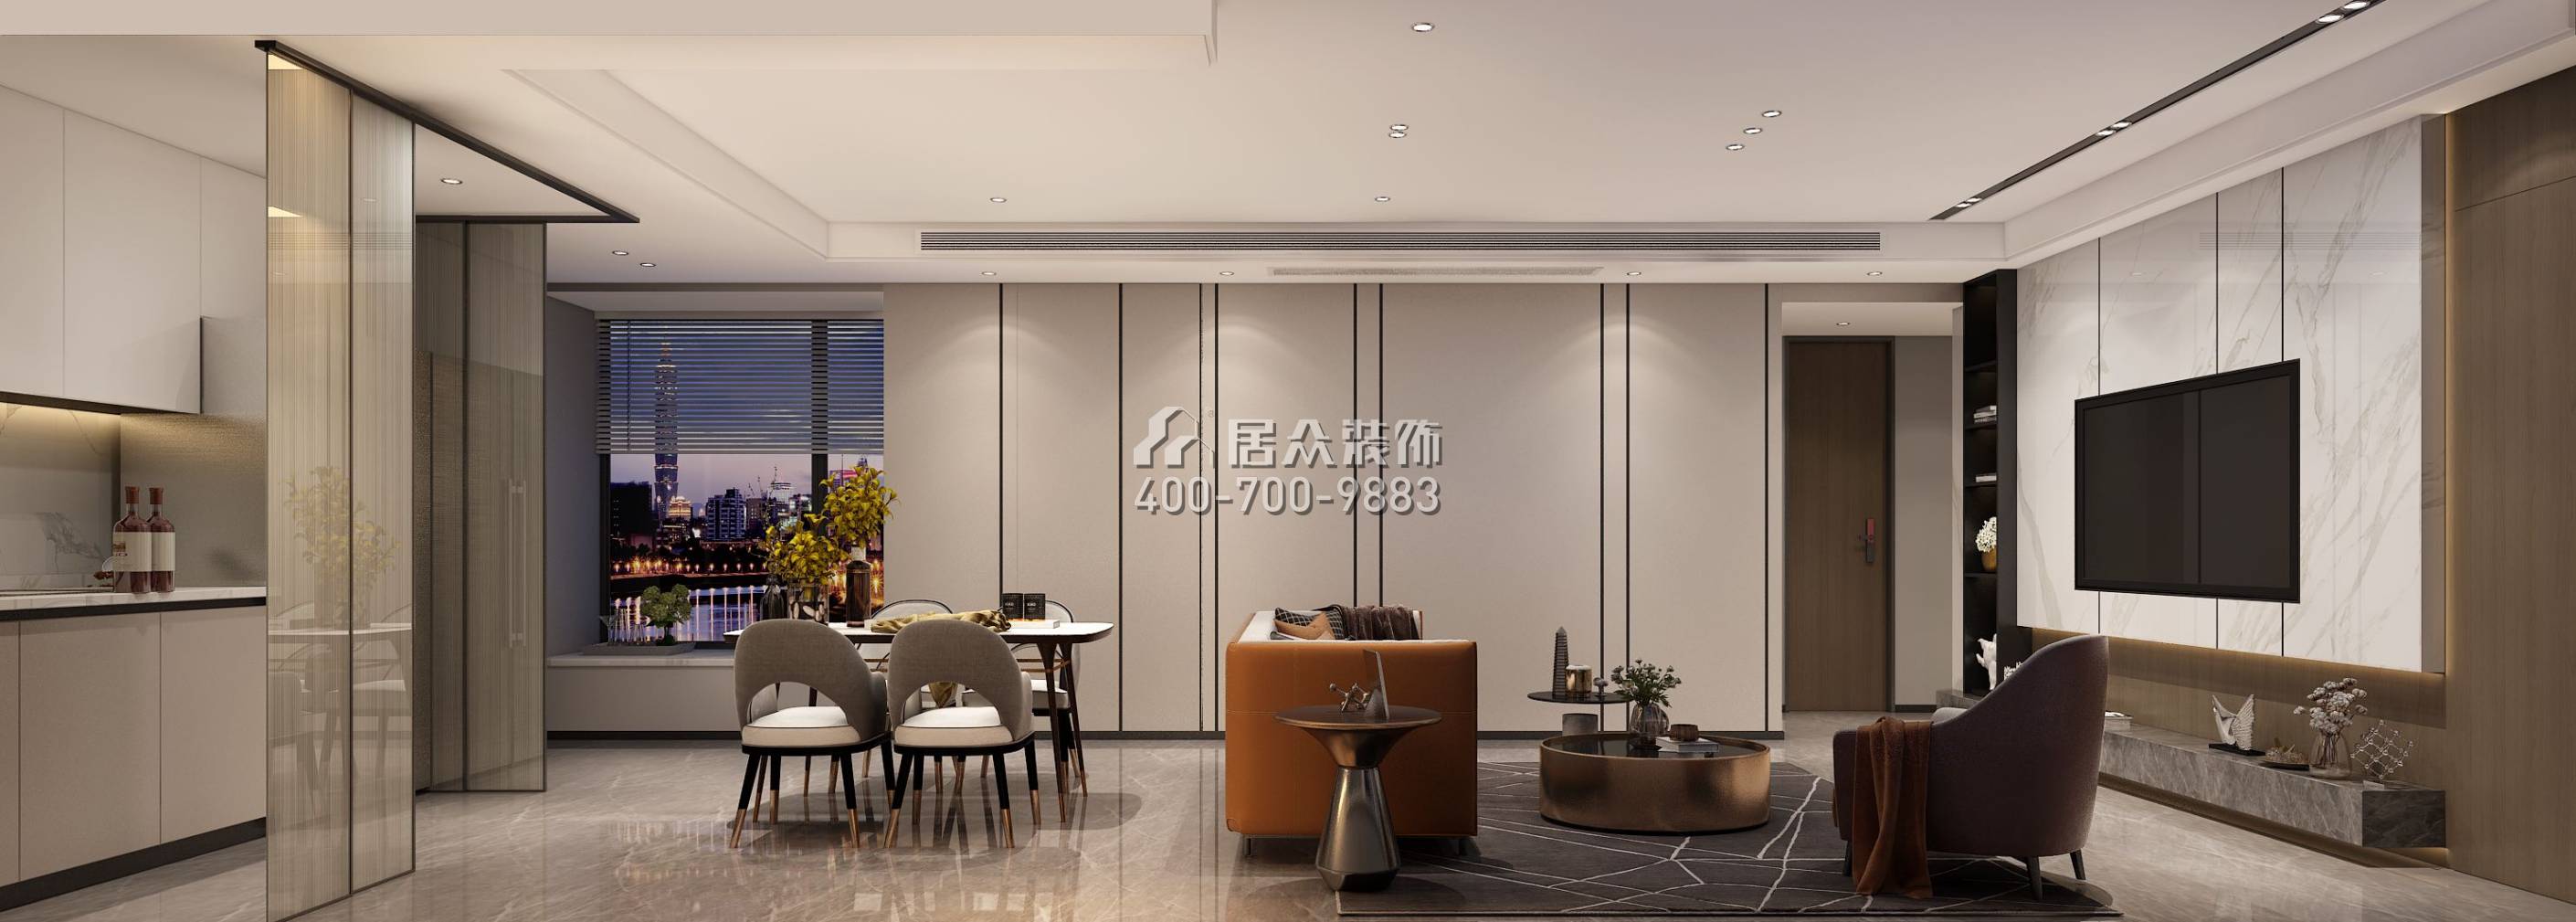 天鹅湖花园三期123平方米现代简约风格平层户型客餐厅一体装修效果图